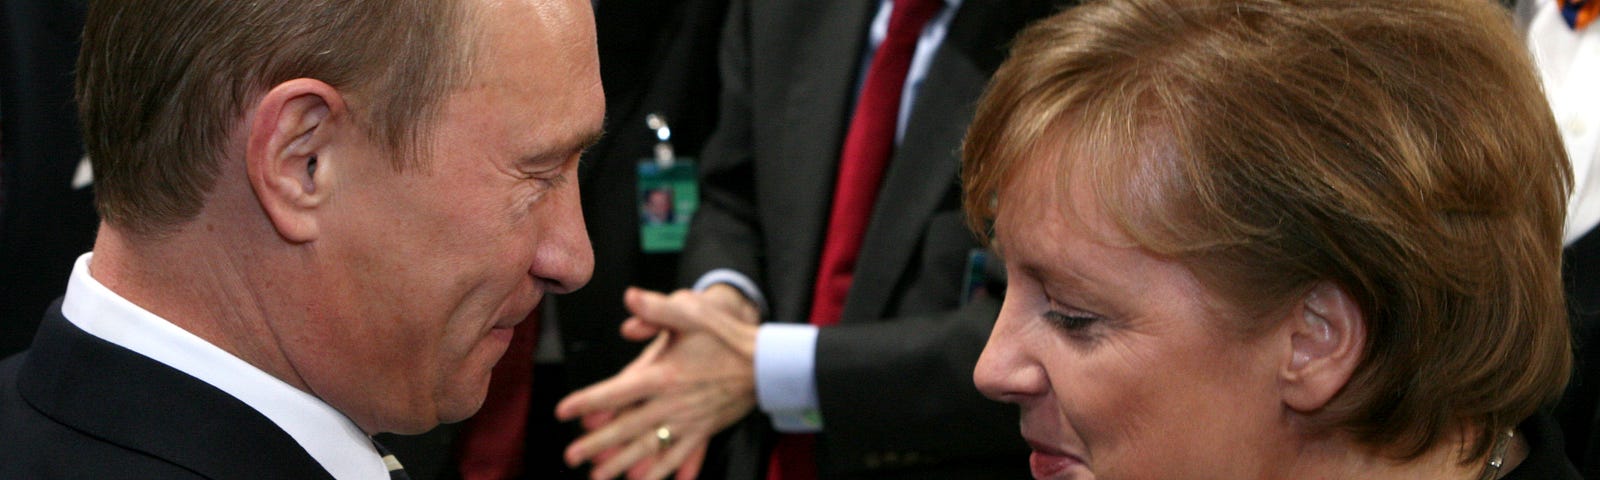 Photograph of Vladimir Putin and Angela Merkel shaking hands in 2007.